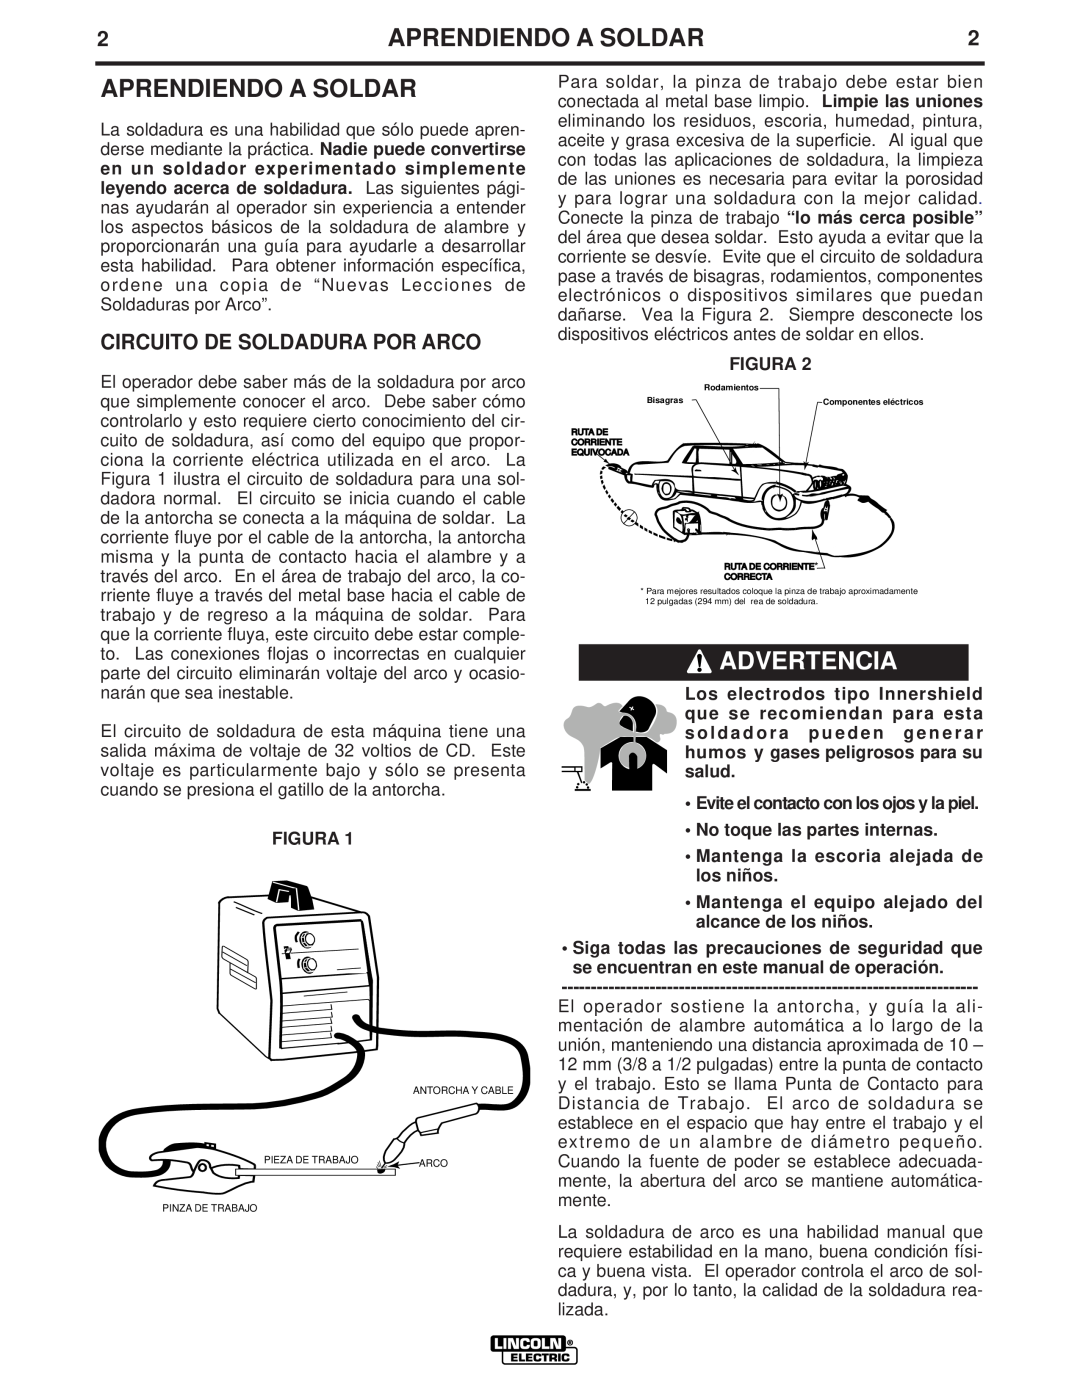 Lincoln Electric LTW1 manual Aprendiendo A Soldar, Advertencia, Circuito De Soldadura Por Arco, Figura 